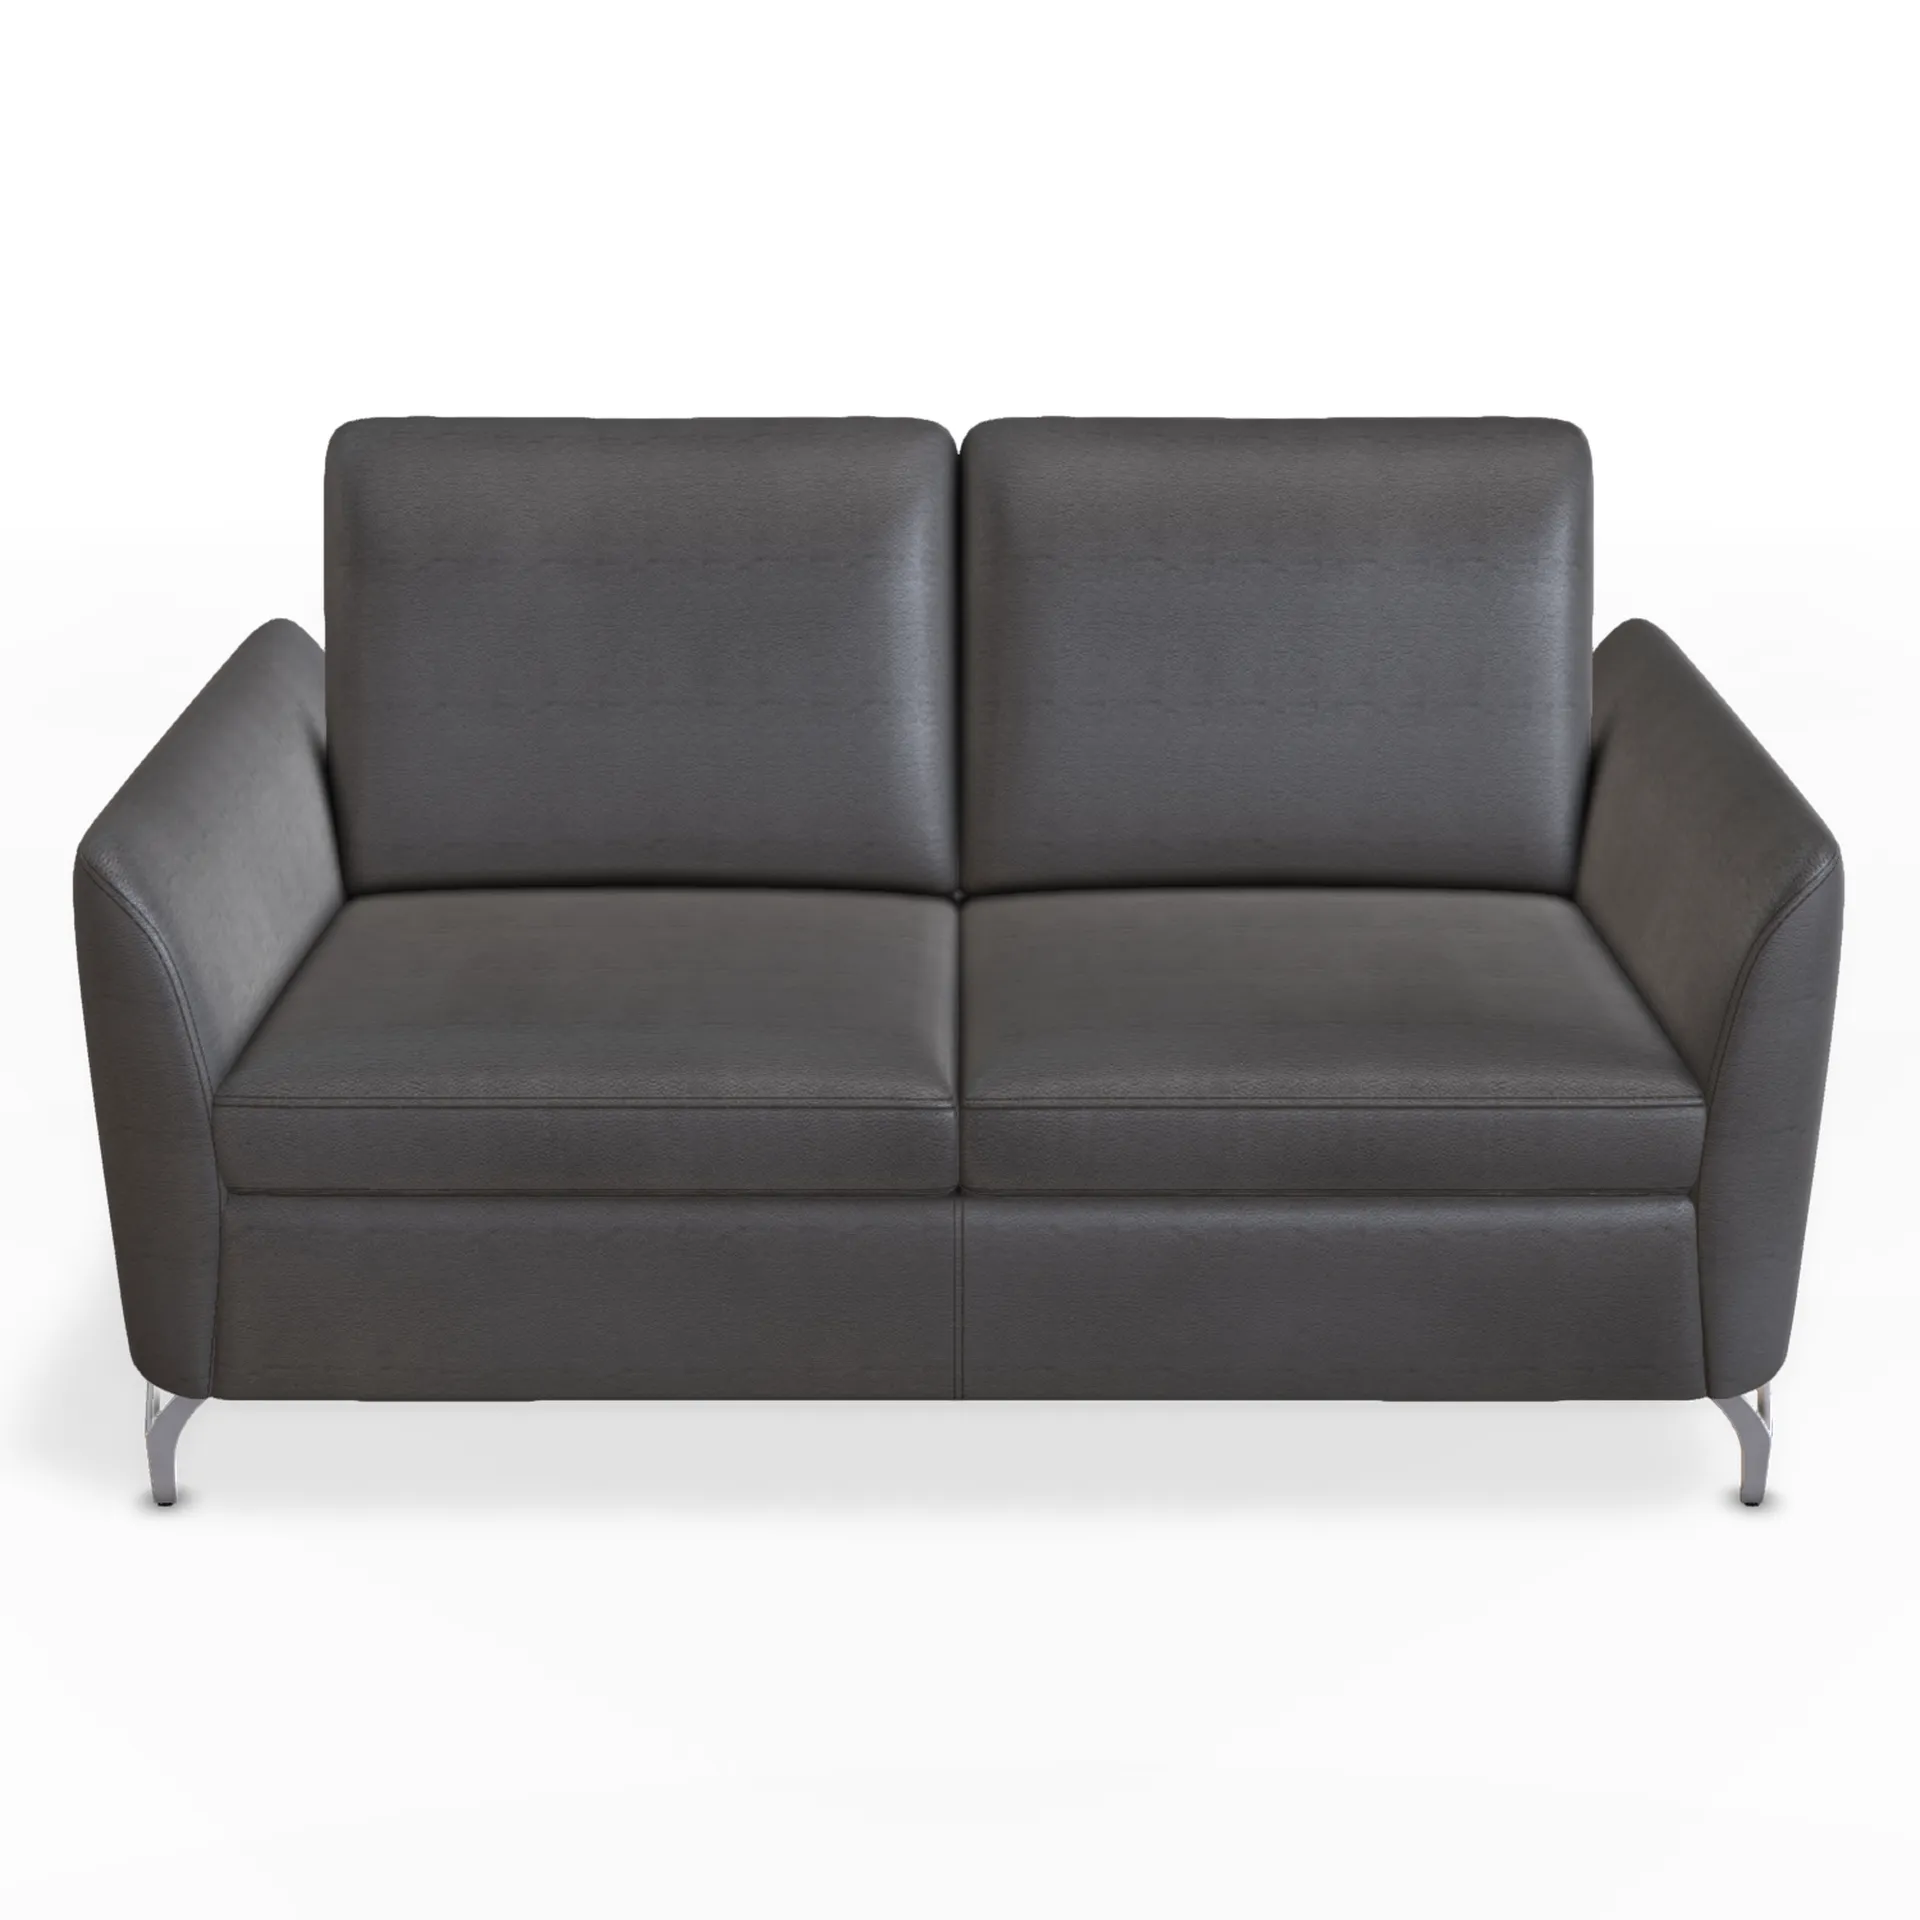 bequemes 2 sitzer sofa, individuell auf ihren wunsch konfigurierbar. Ob kontrastnaht oder passend